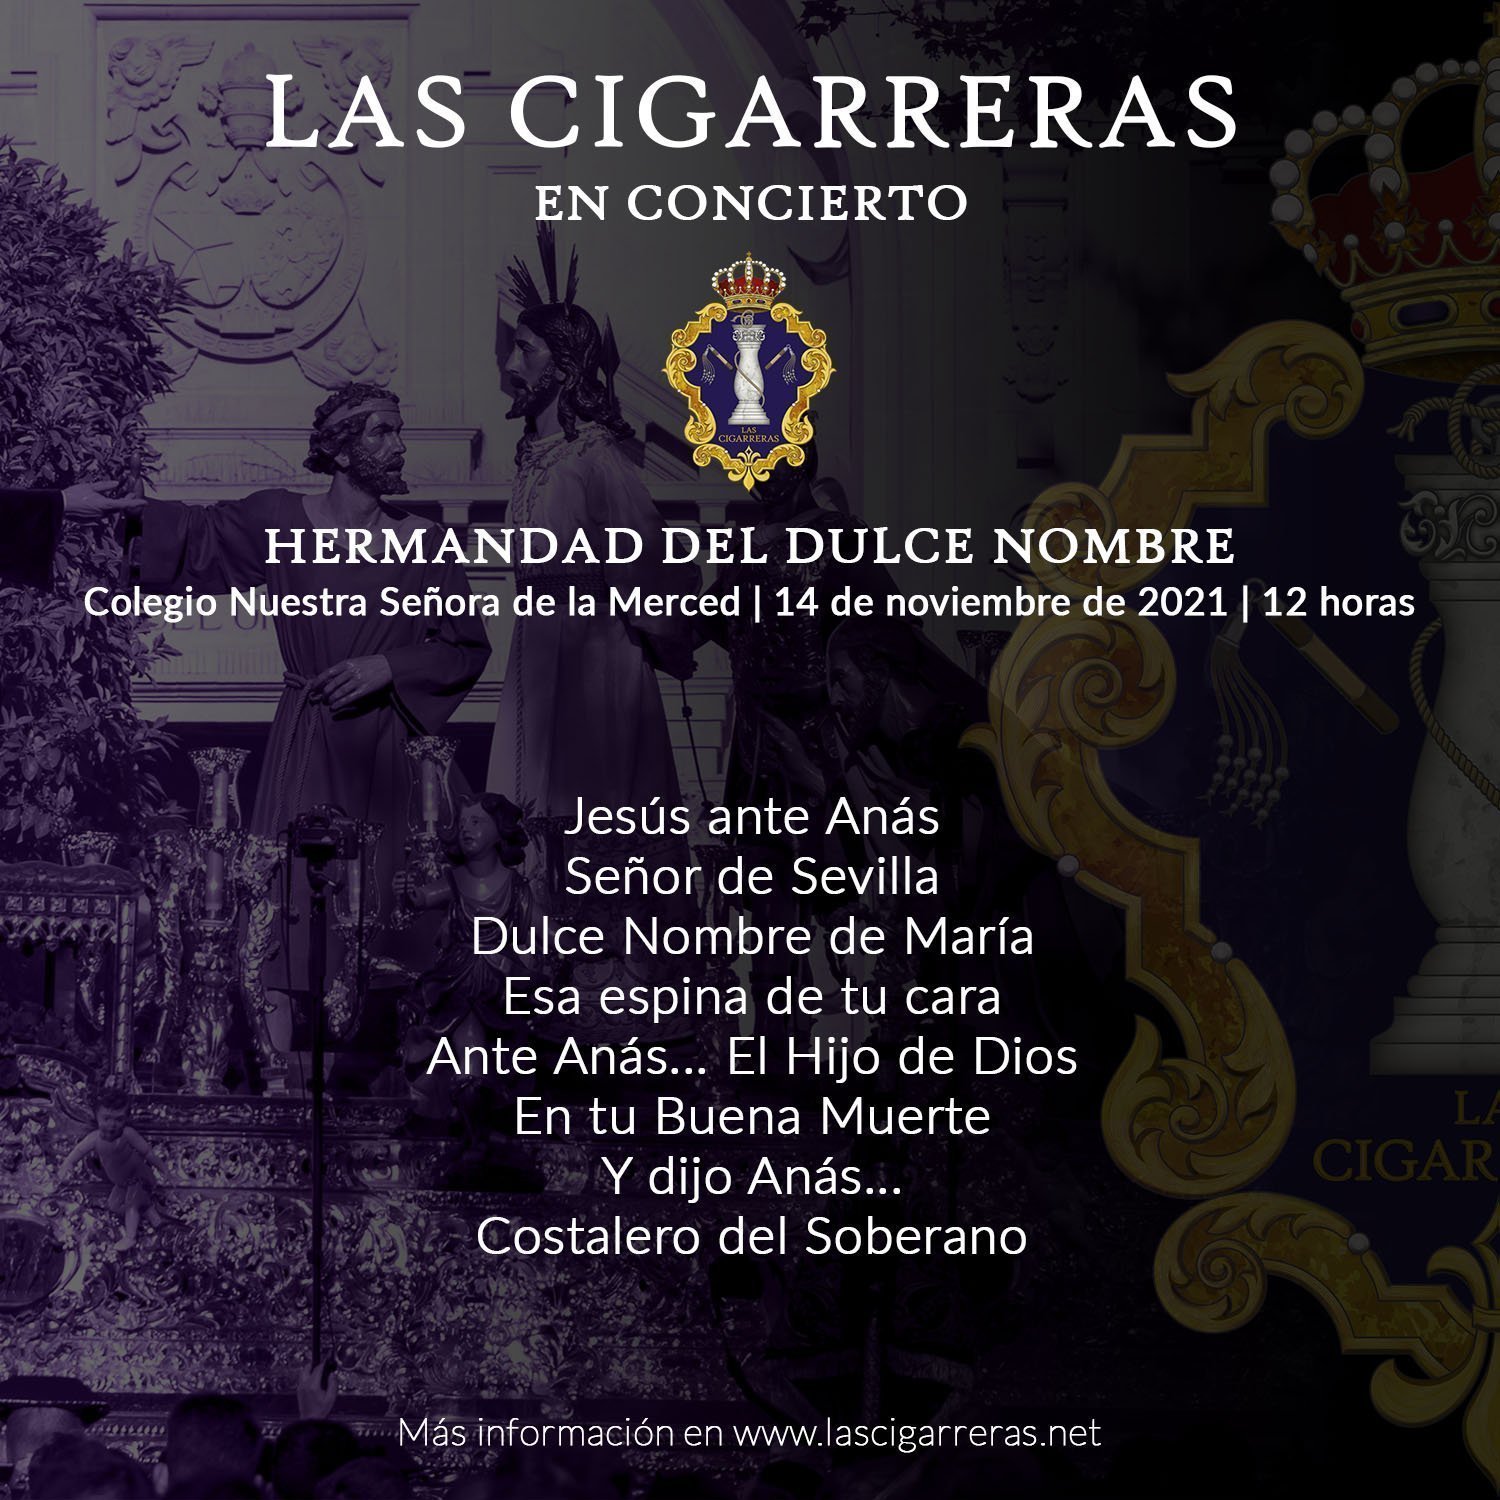 Programa del concierto de Las Cigarreras en el Dulce Nombre 2021